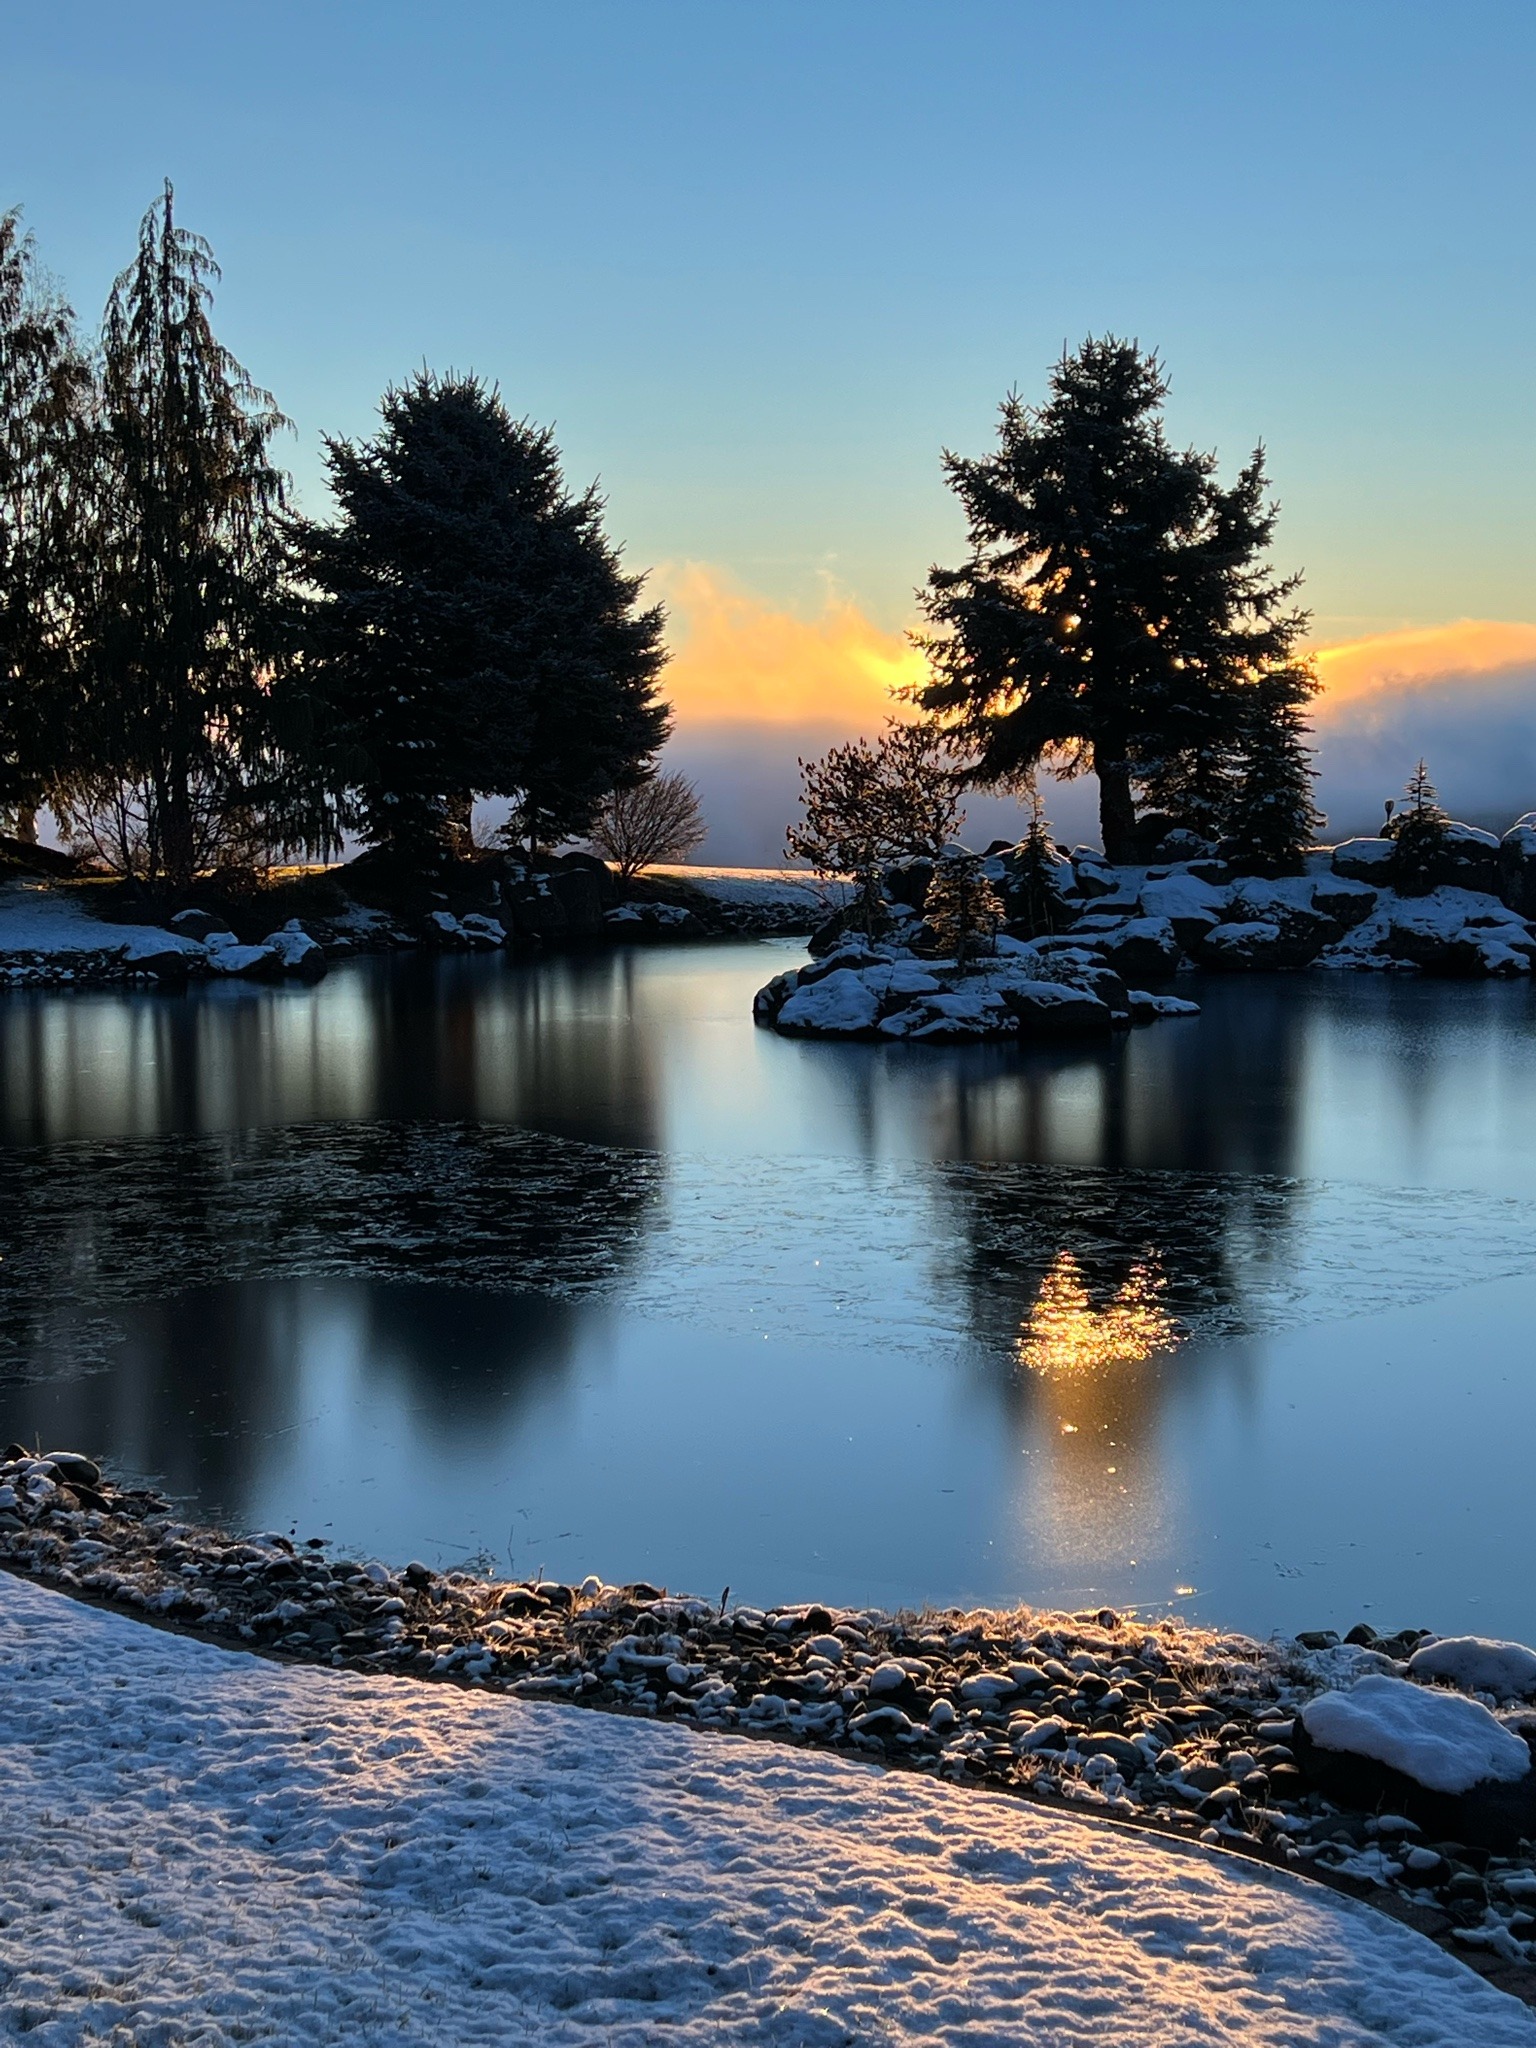 Природа Вот и зима. Озеро на закате. Как же красиво, даже не холодно.